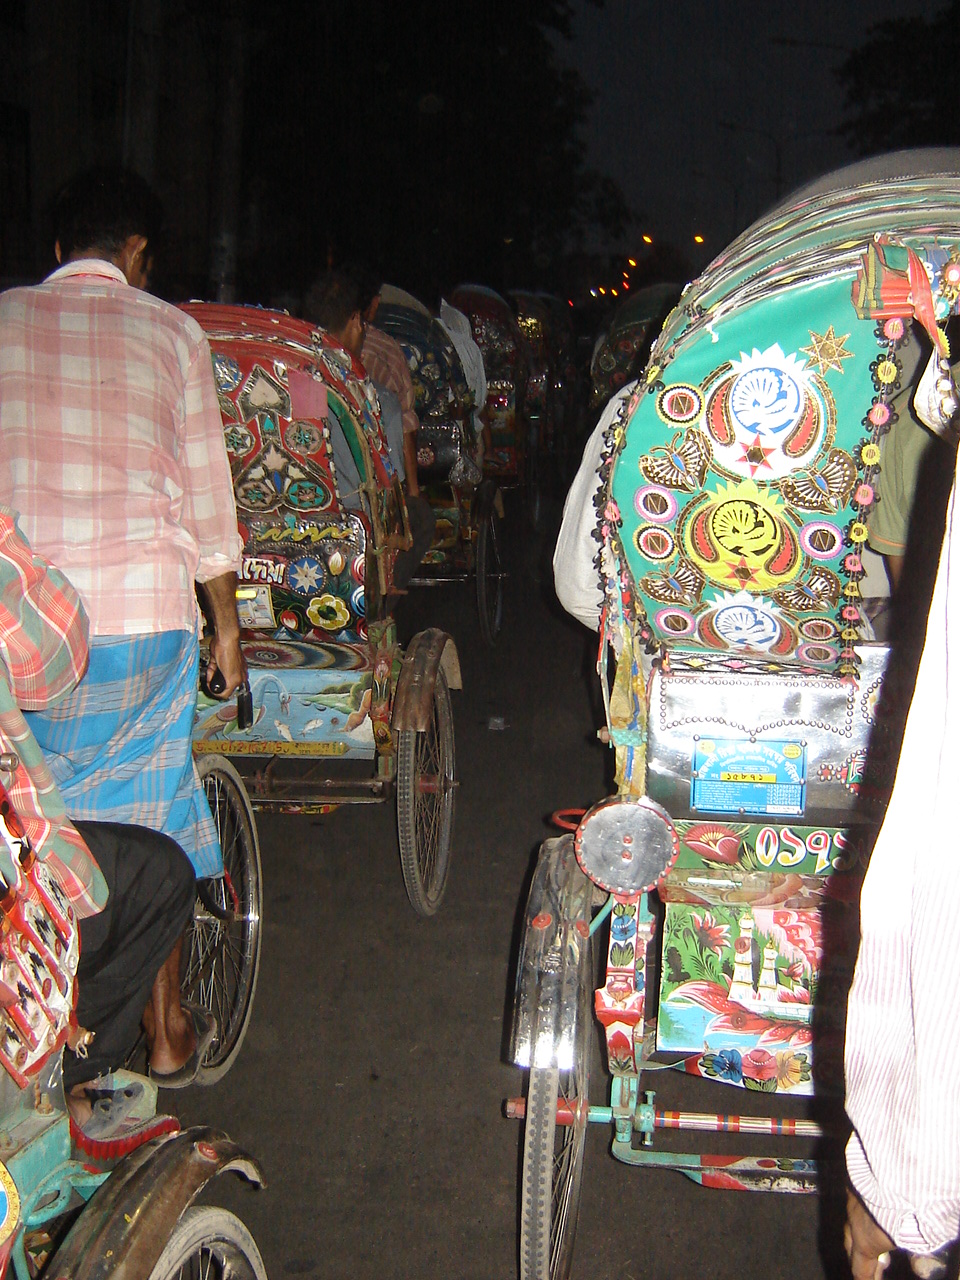 a group of people riding rickshaws